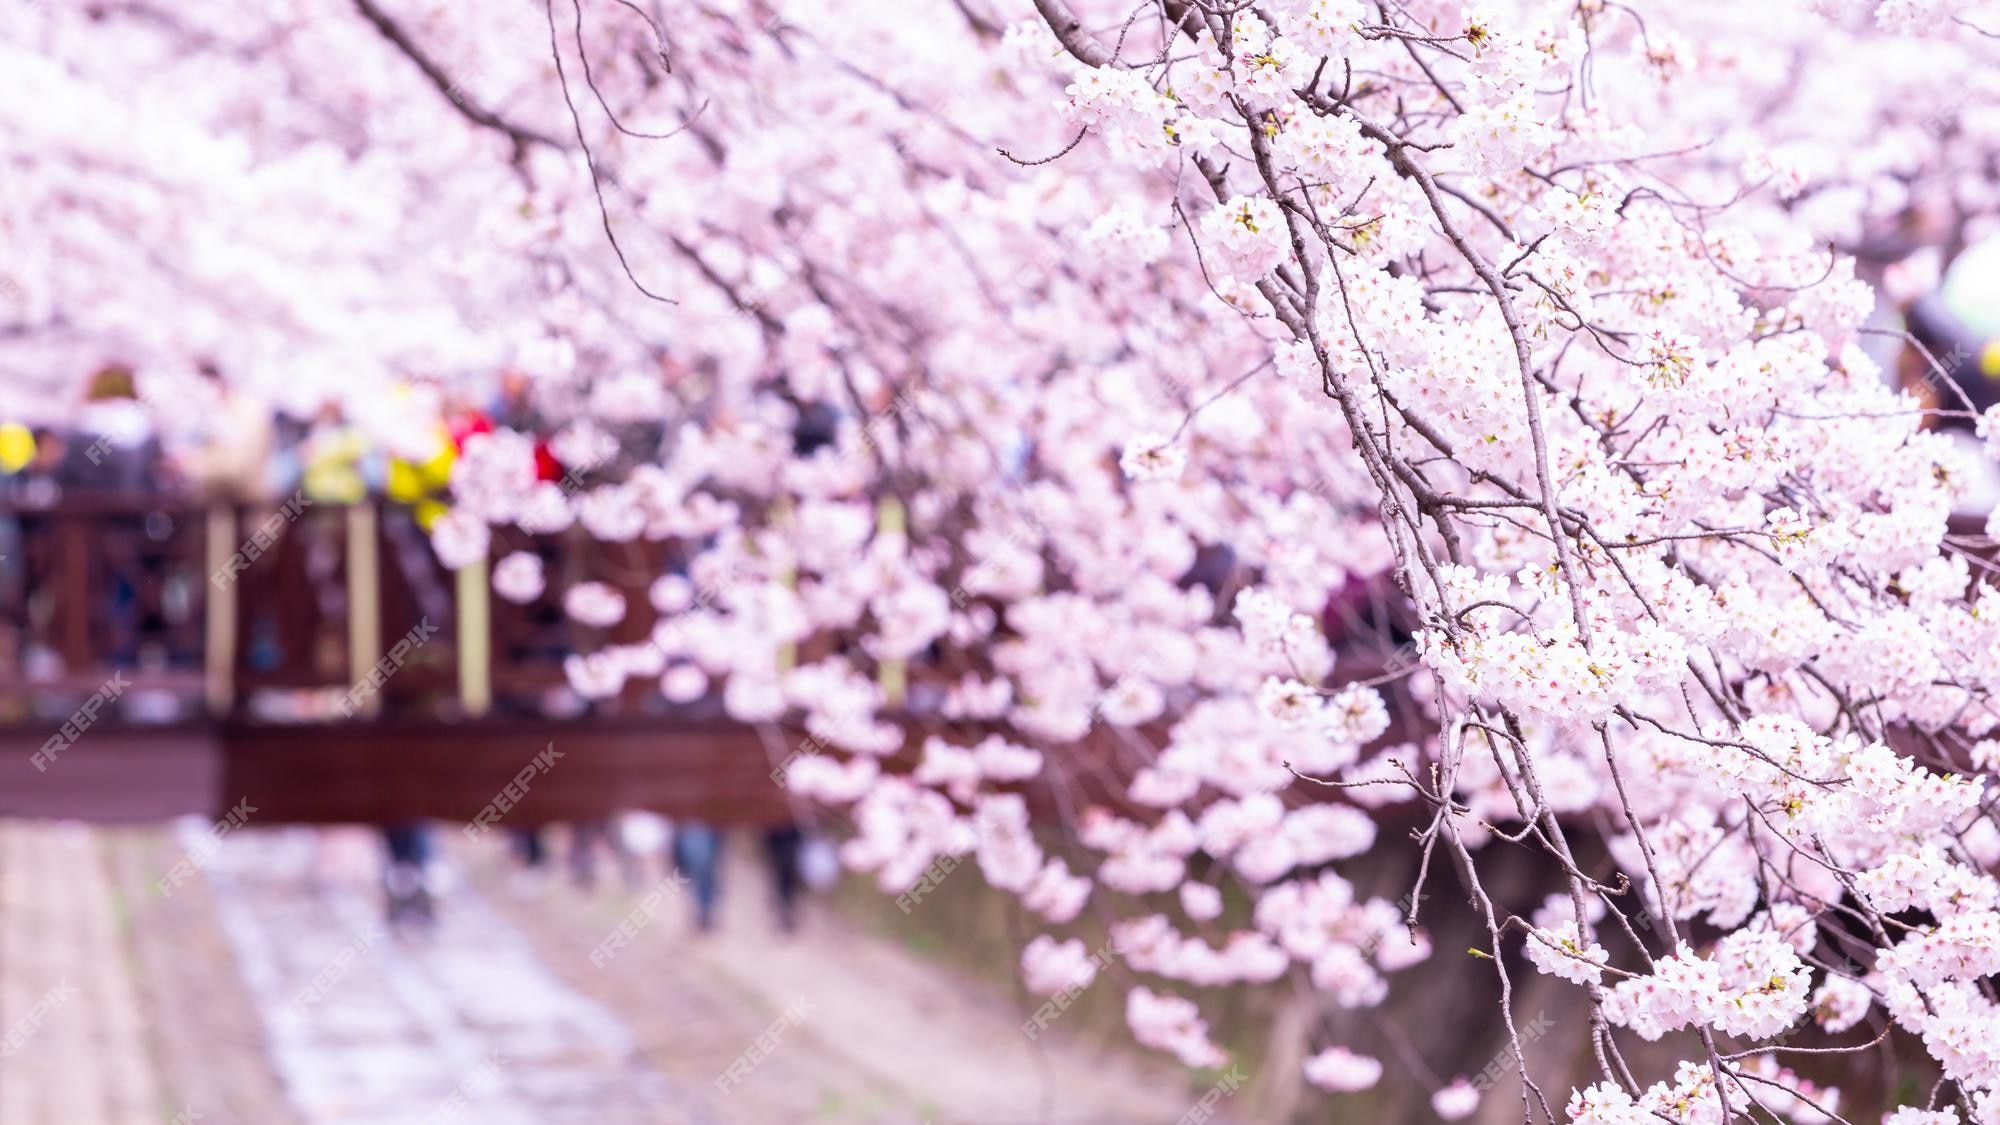 Premium Photo | Sakura festival cherry blossom at yeojwacheon stream ...